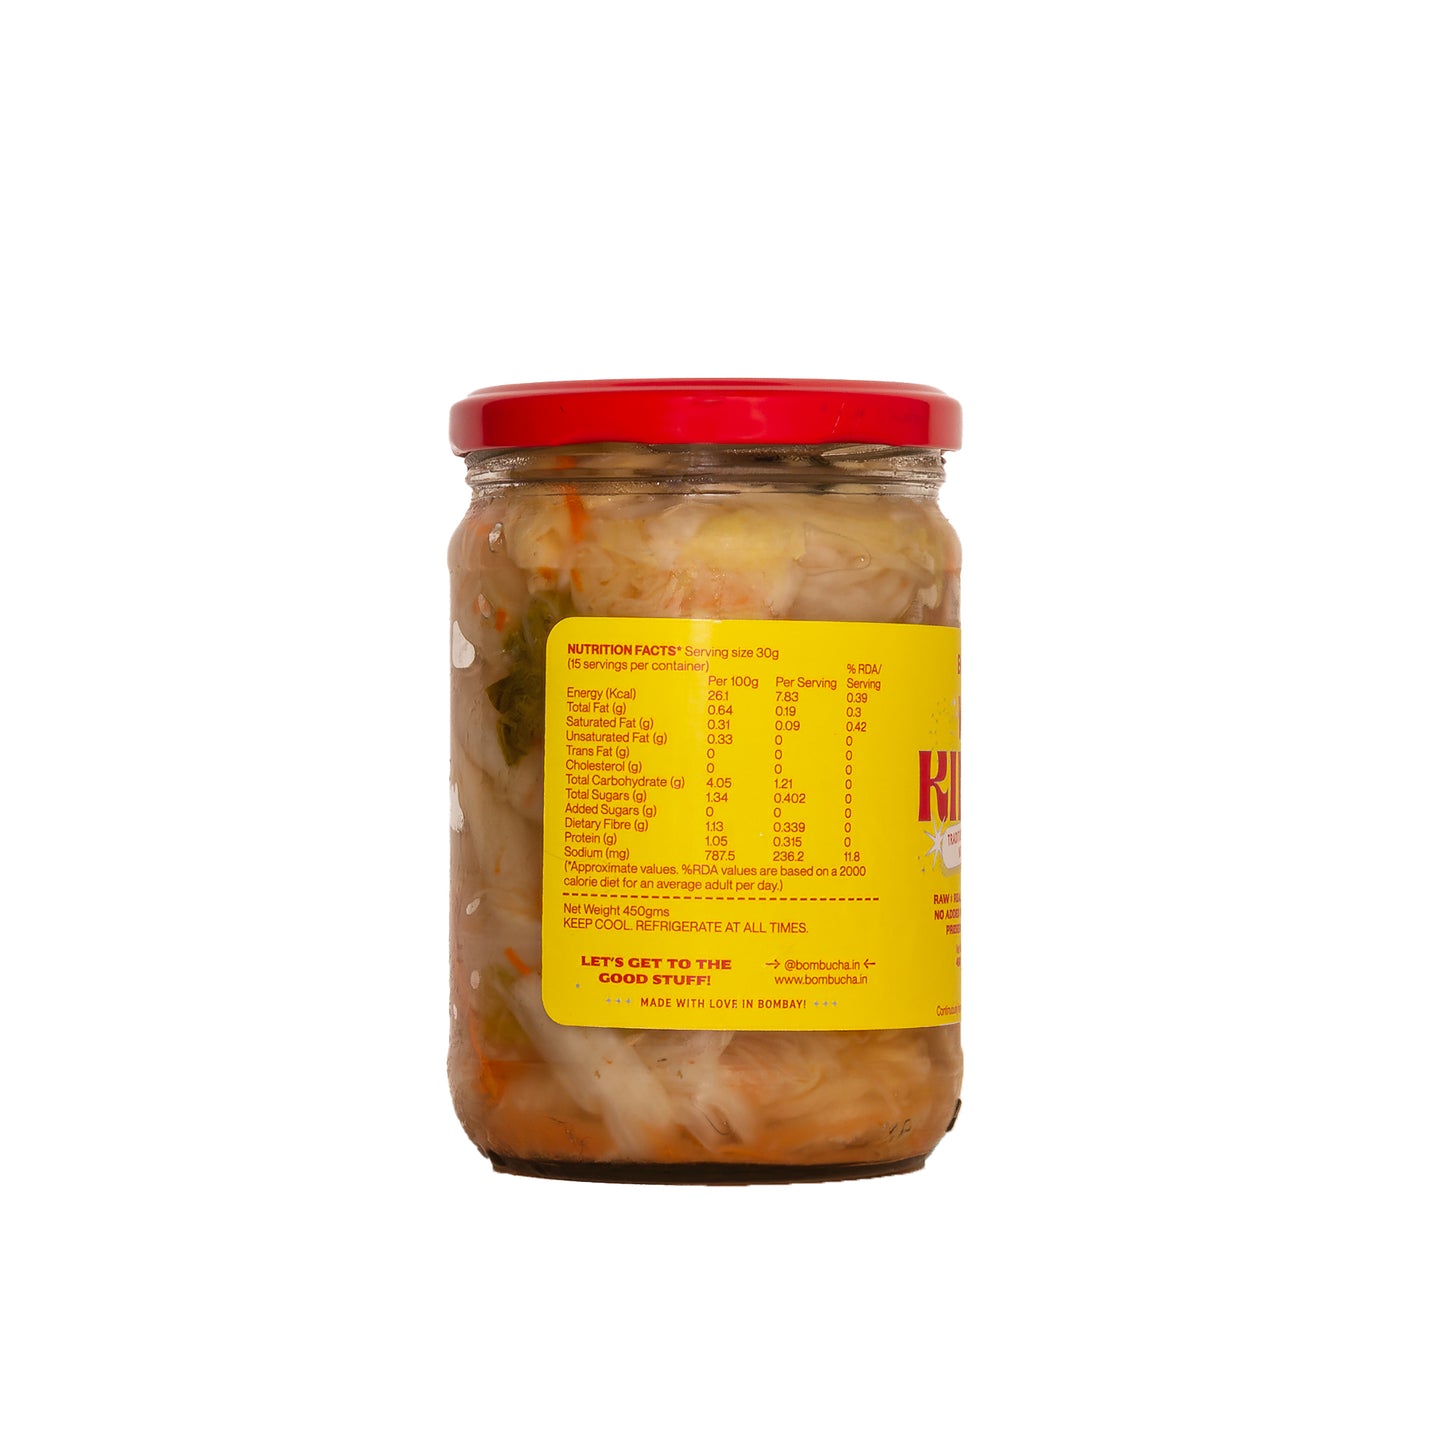 Kimchi - White (Non Spicy) 450gm (DEL)